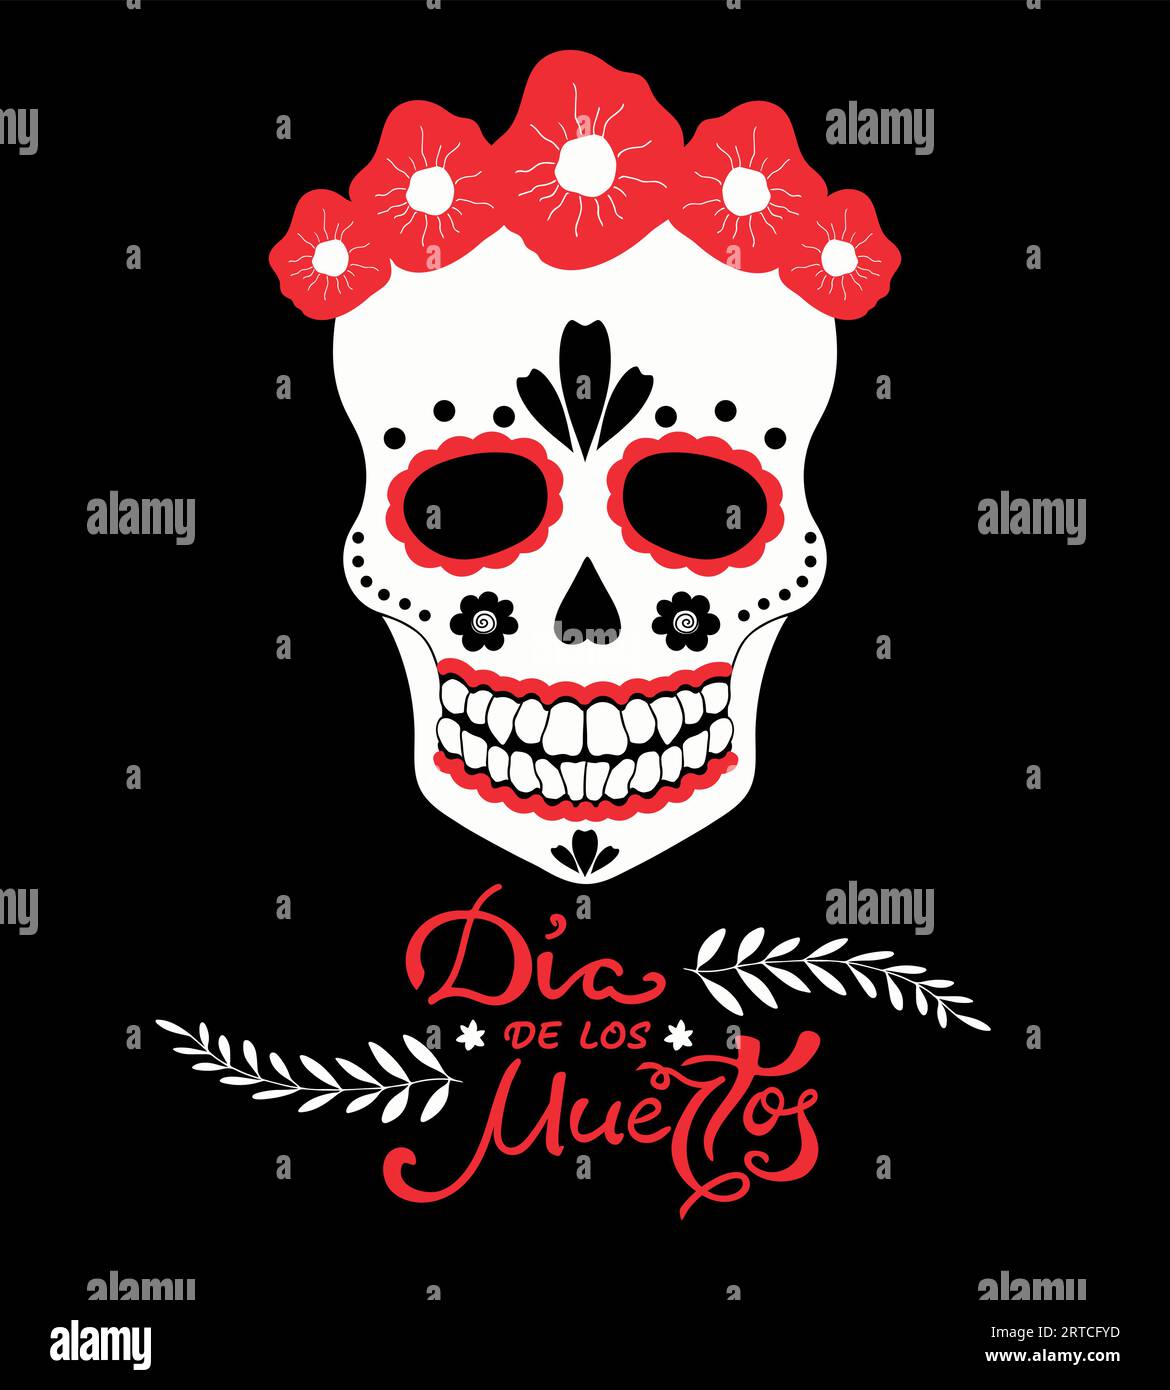 Il giorno dei morti, poster tradizionale delle festività messicane dia de los Muertos. Teschio di zucchero con fiori rossi e scrittura a mano. Illustrazione vettoriale Illustrazione Vettoriale